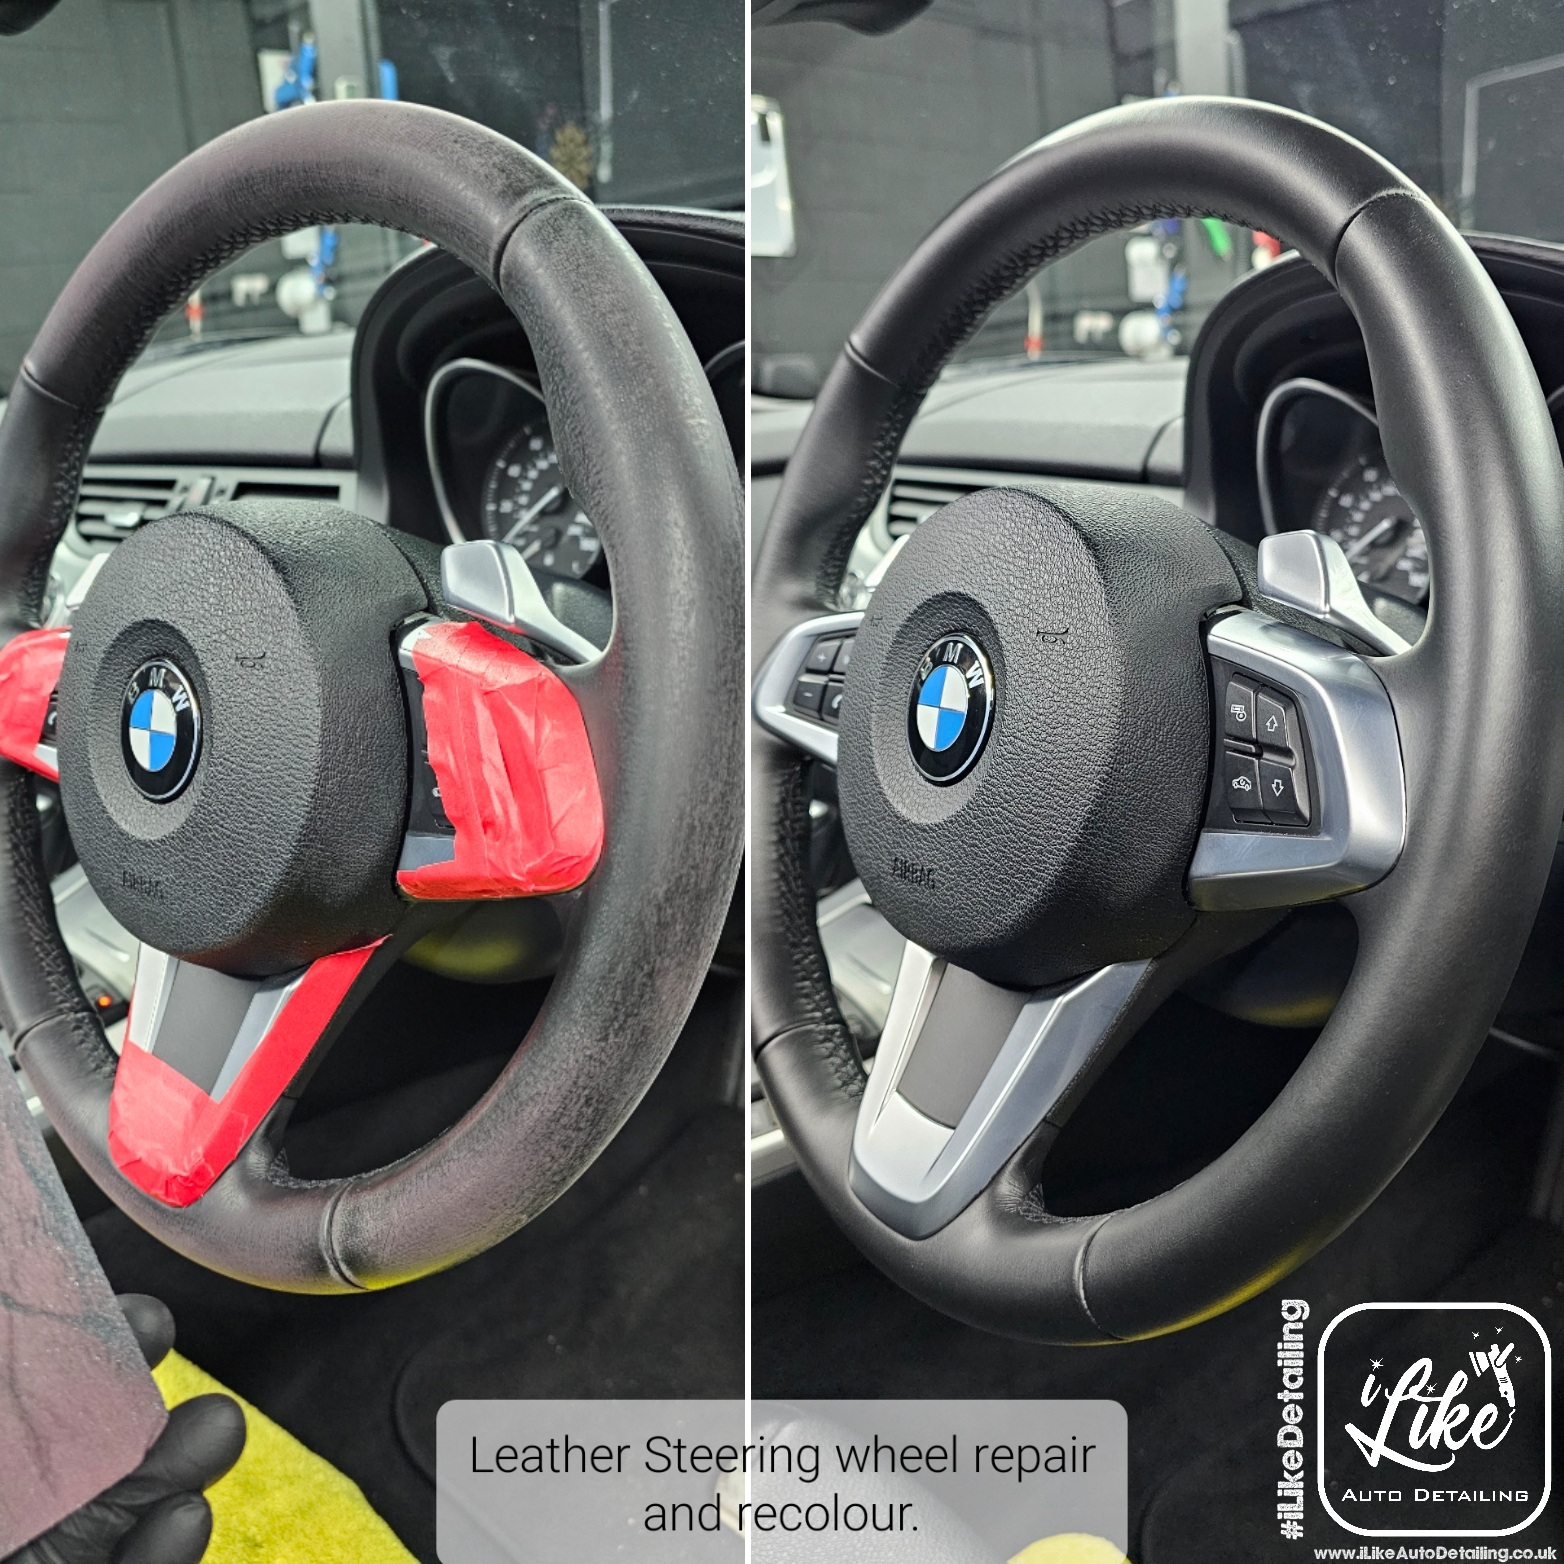 Leather steering wheel repair